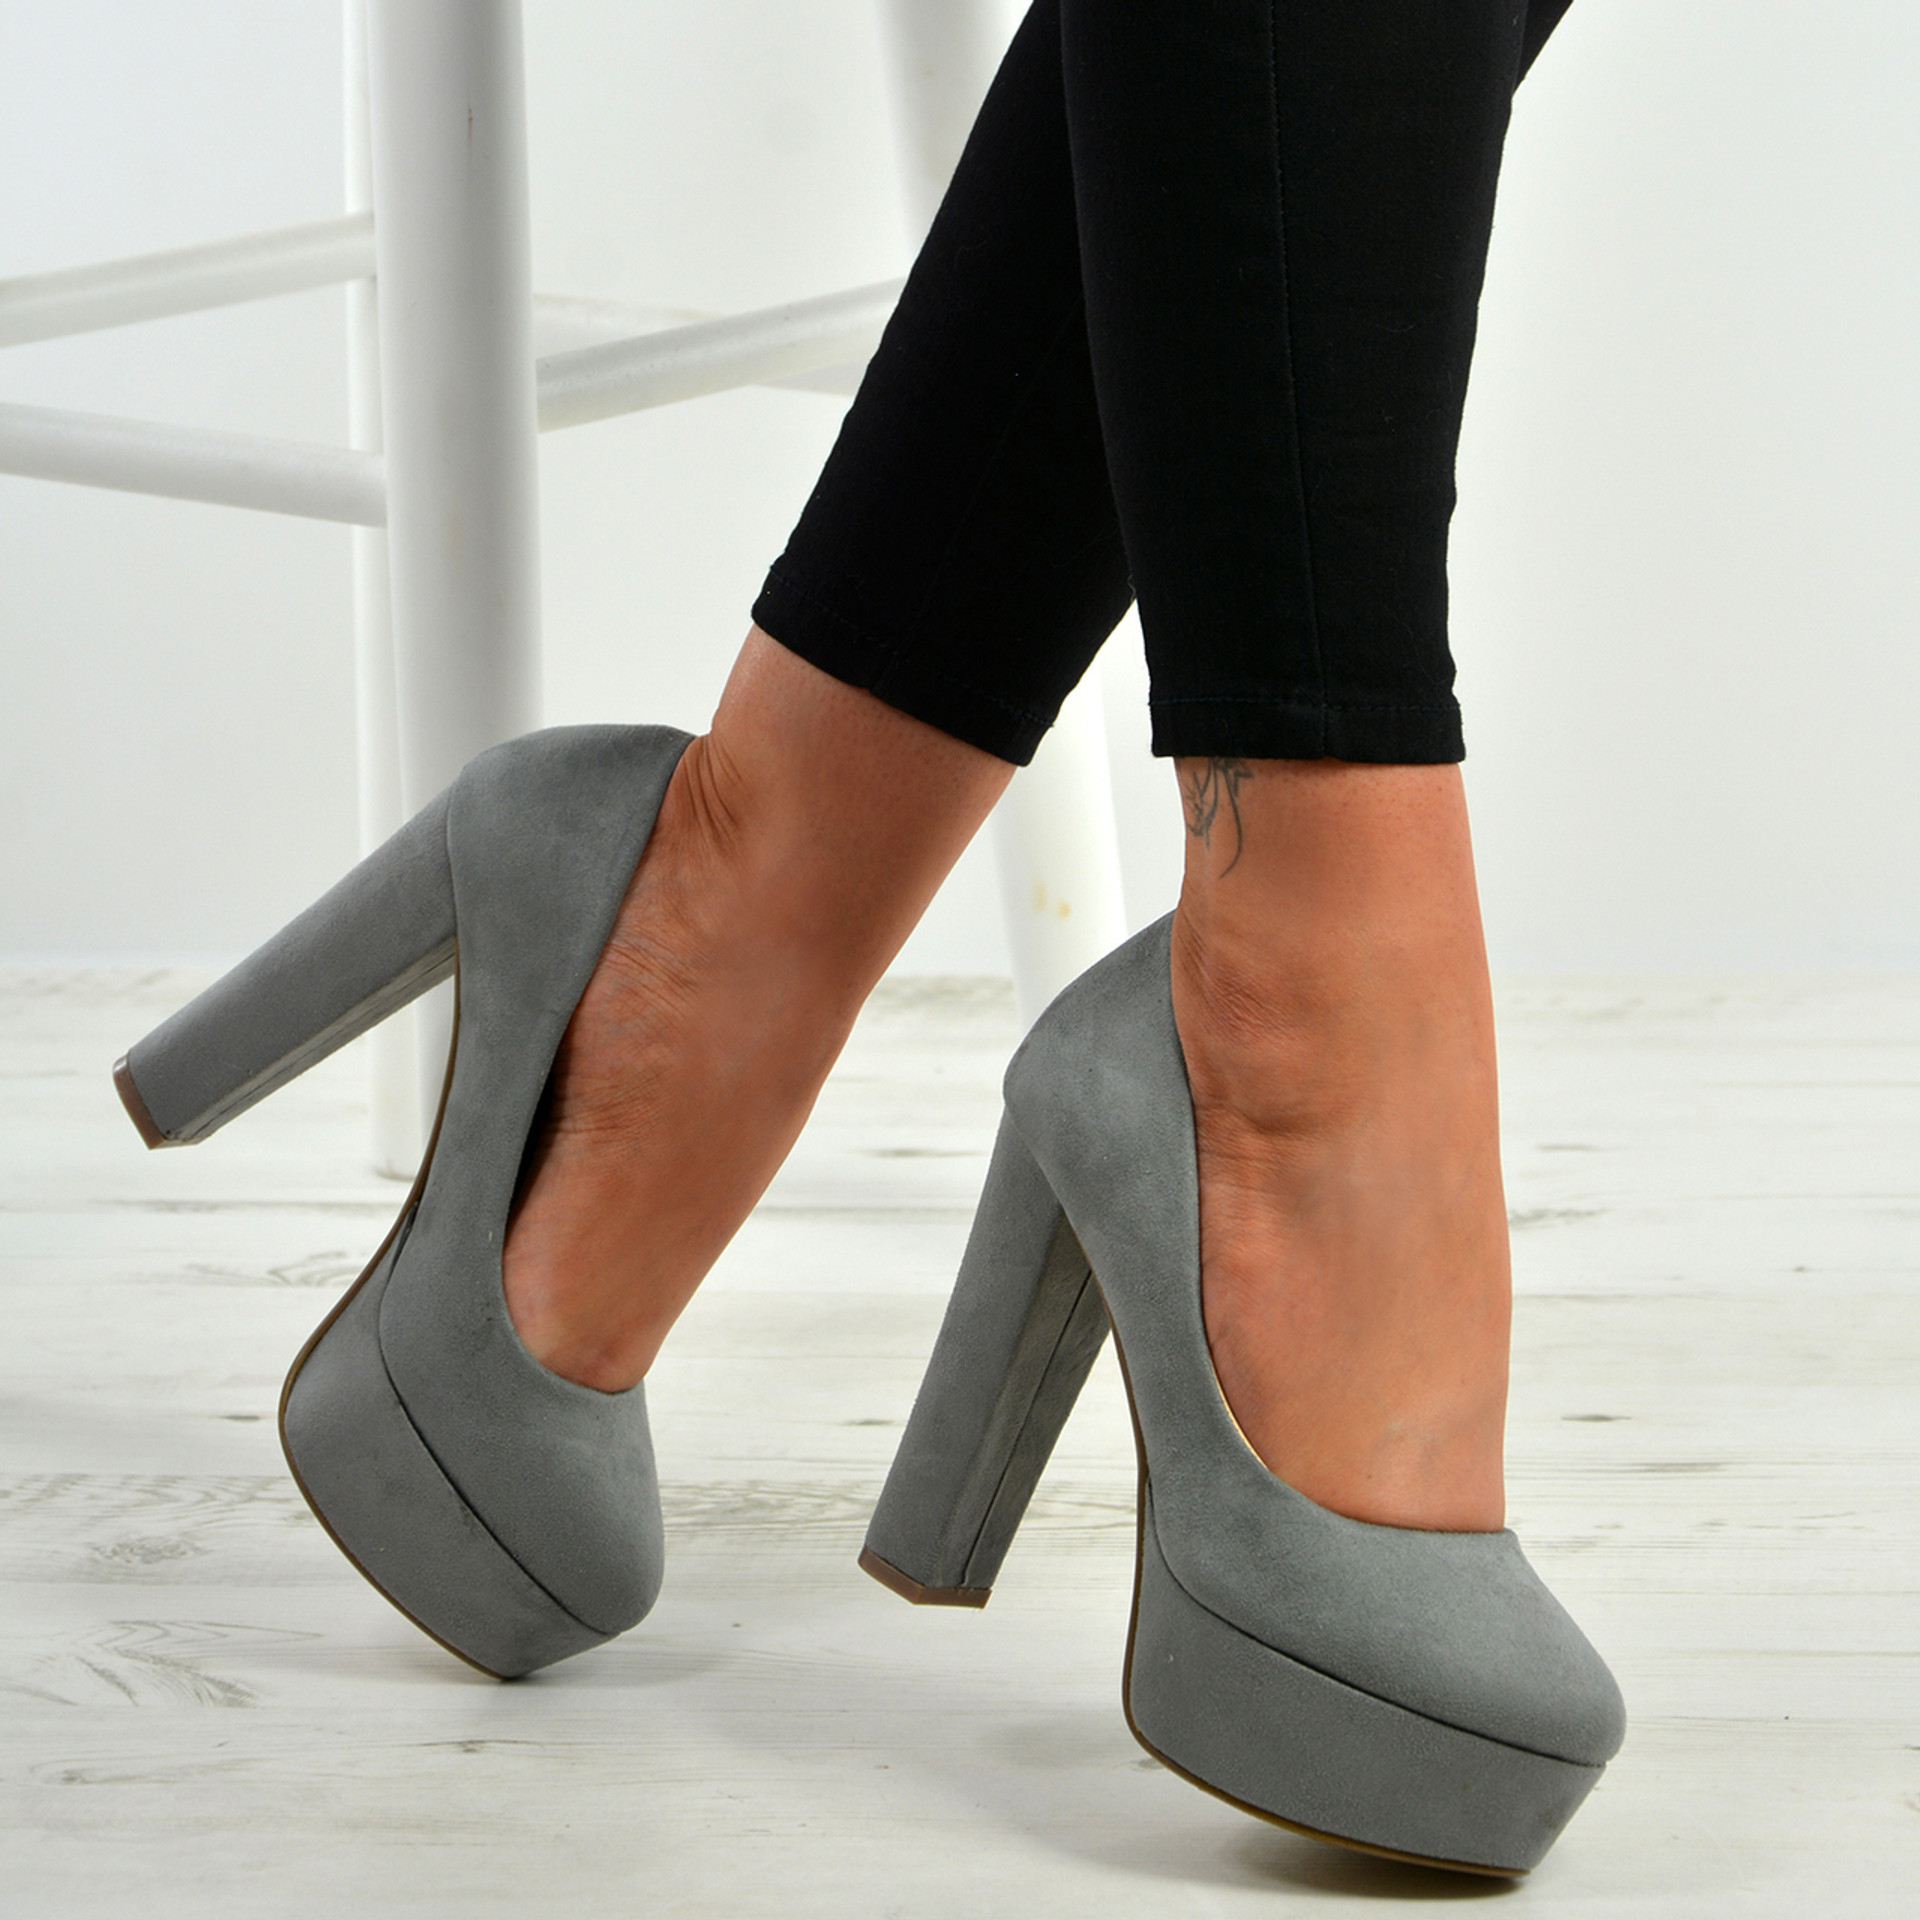 River Island Light Grey Block Heel Court Shoes in Grey | Lyst UK